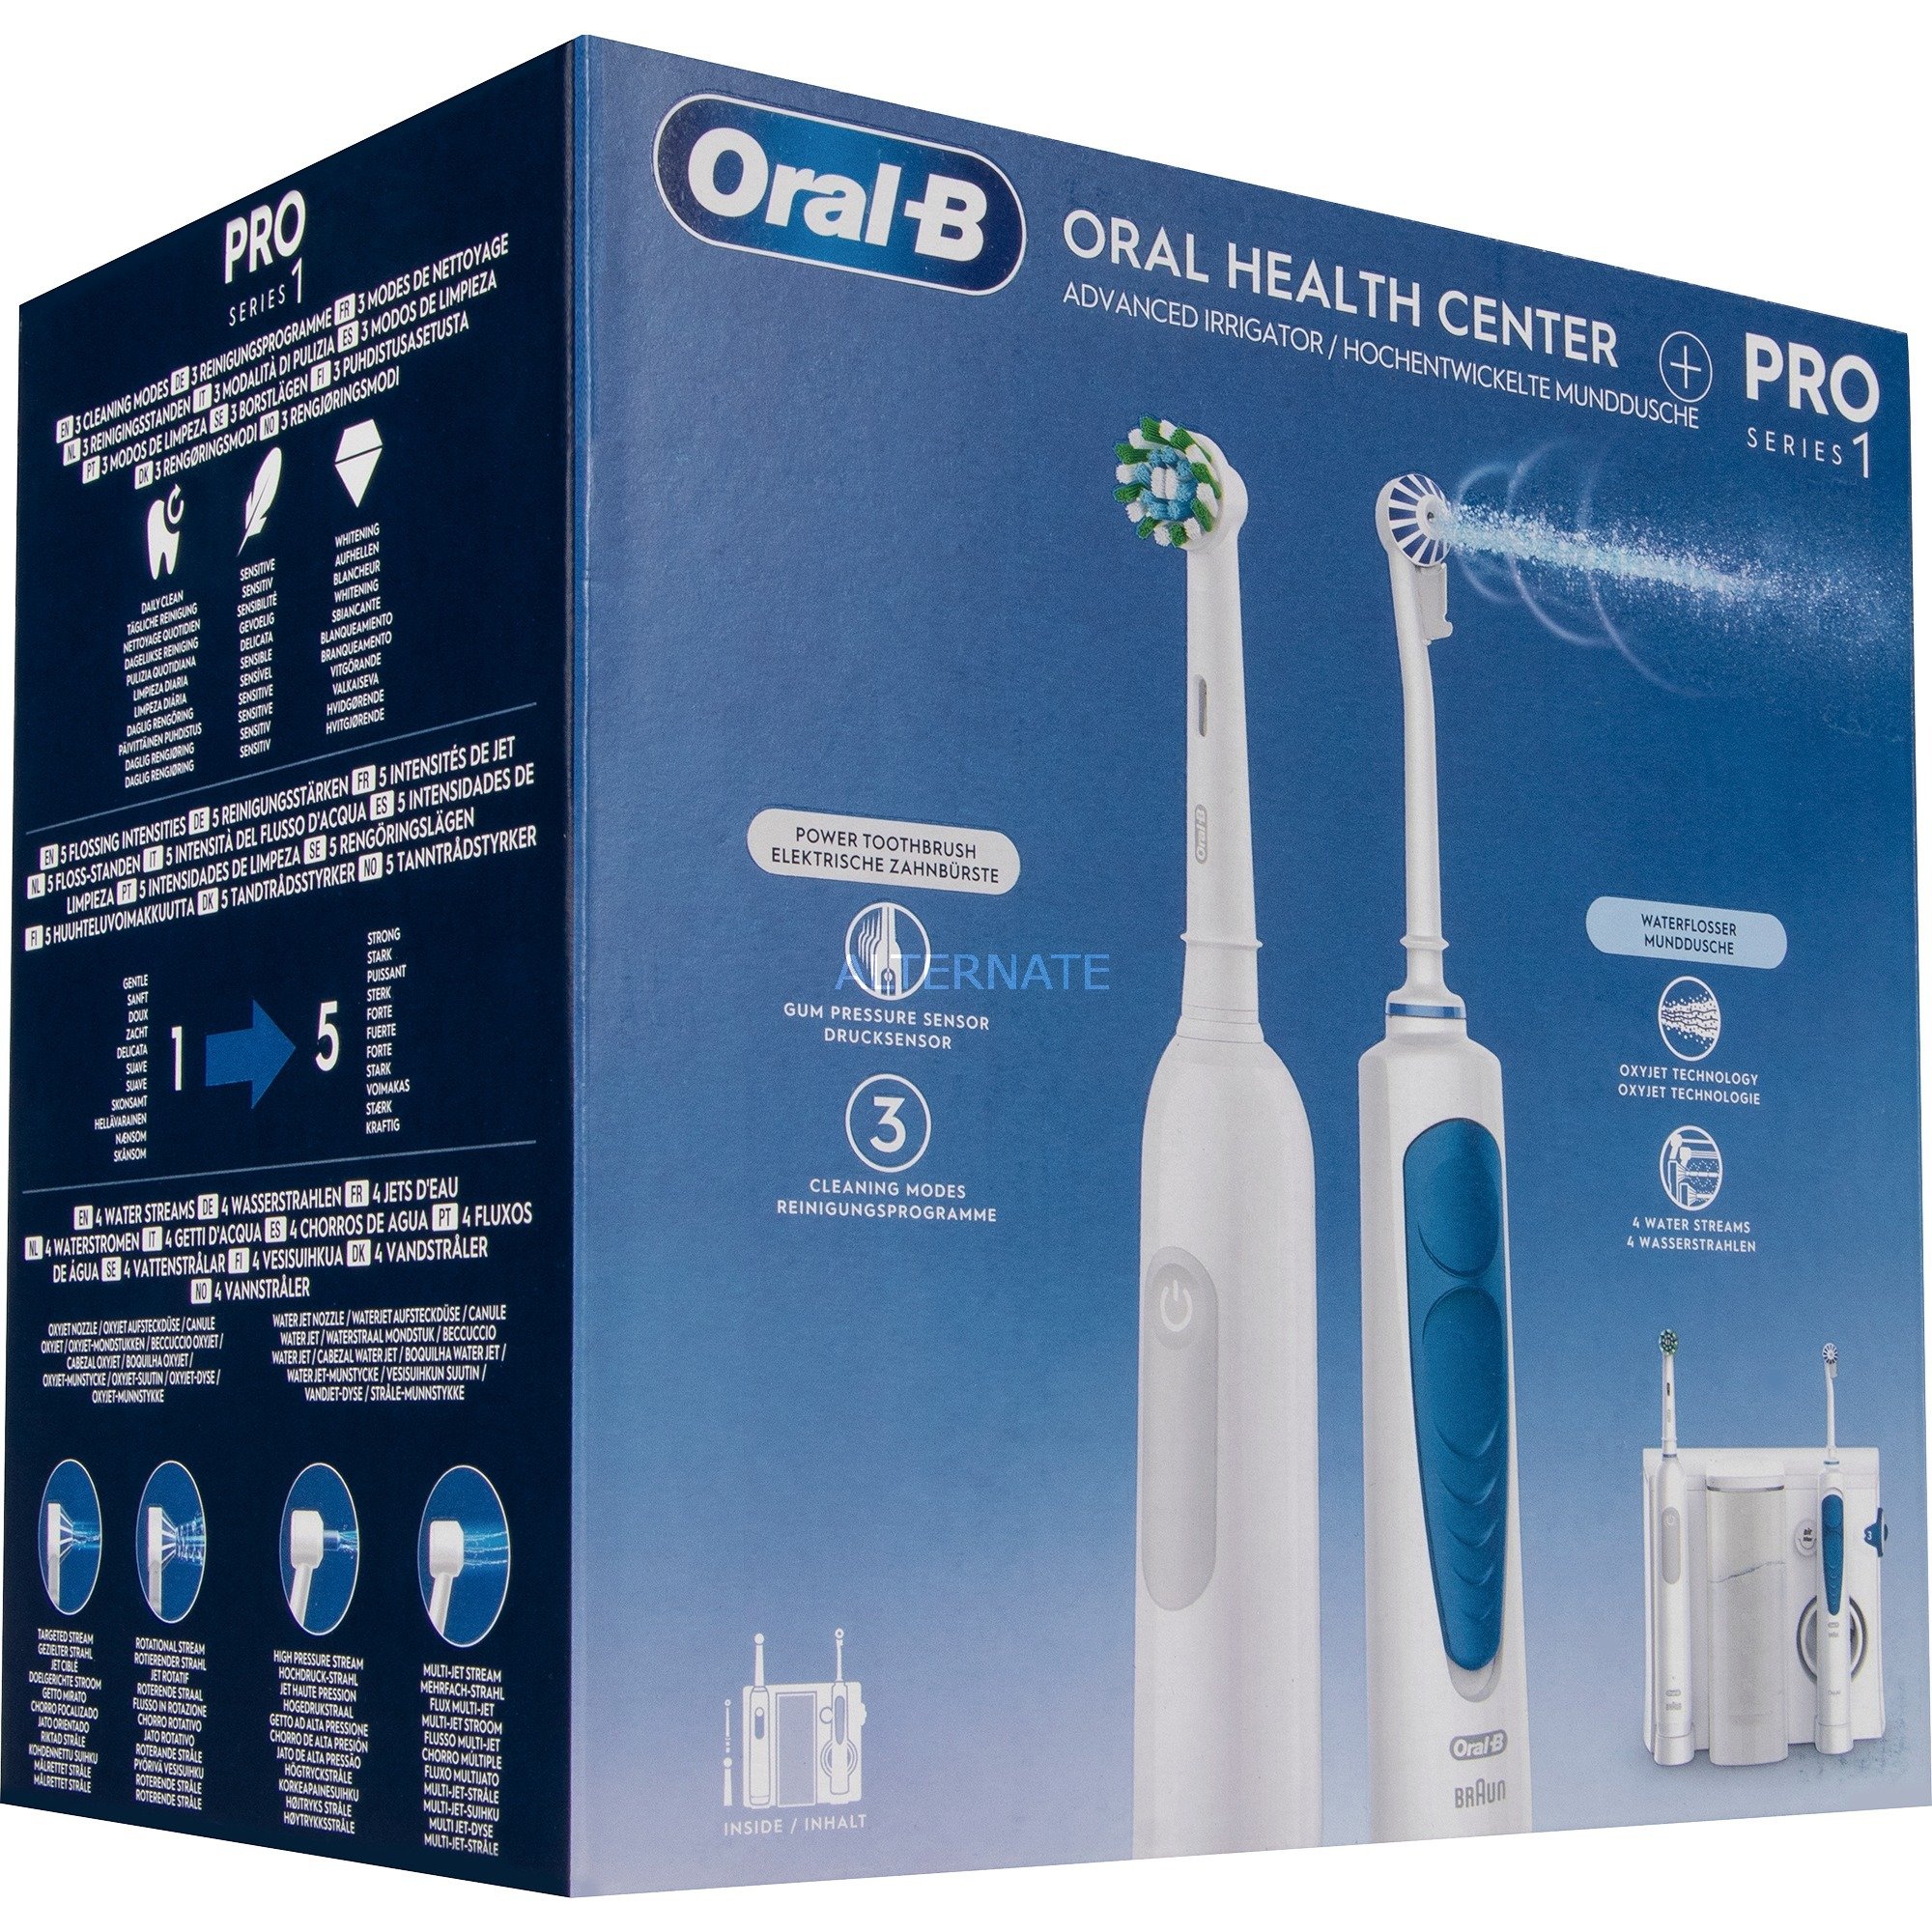 Oral-B Oral Health Center Mundduscher: Zahnseide mit Wasser, 1 Oxyjet Kanüle, 1 WaterJet Kanüle, 1 Pro Series 1 elektrische Zahnbürste, 2 Bürsten